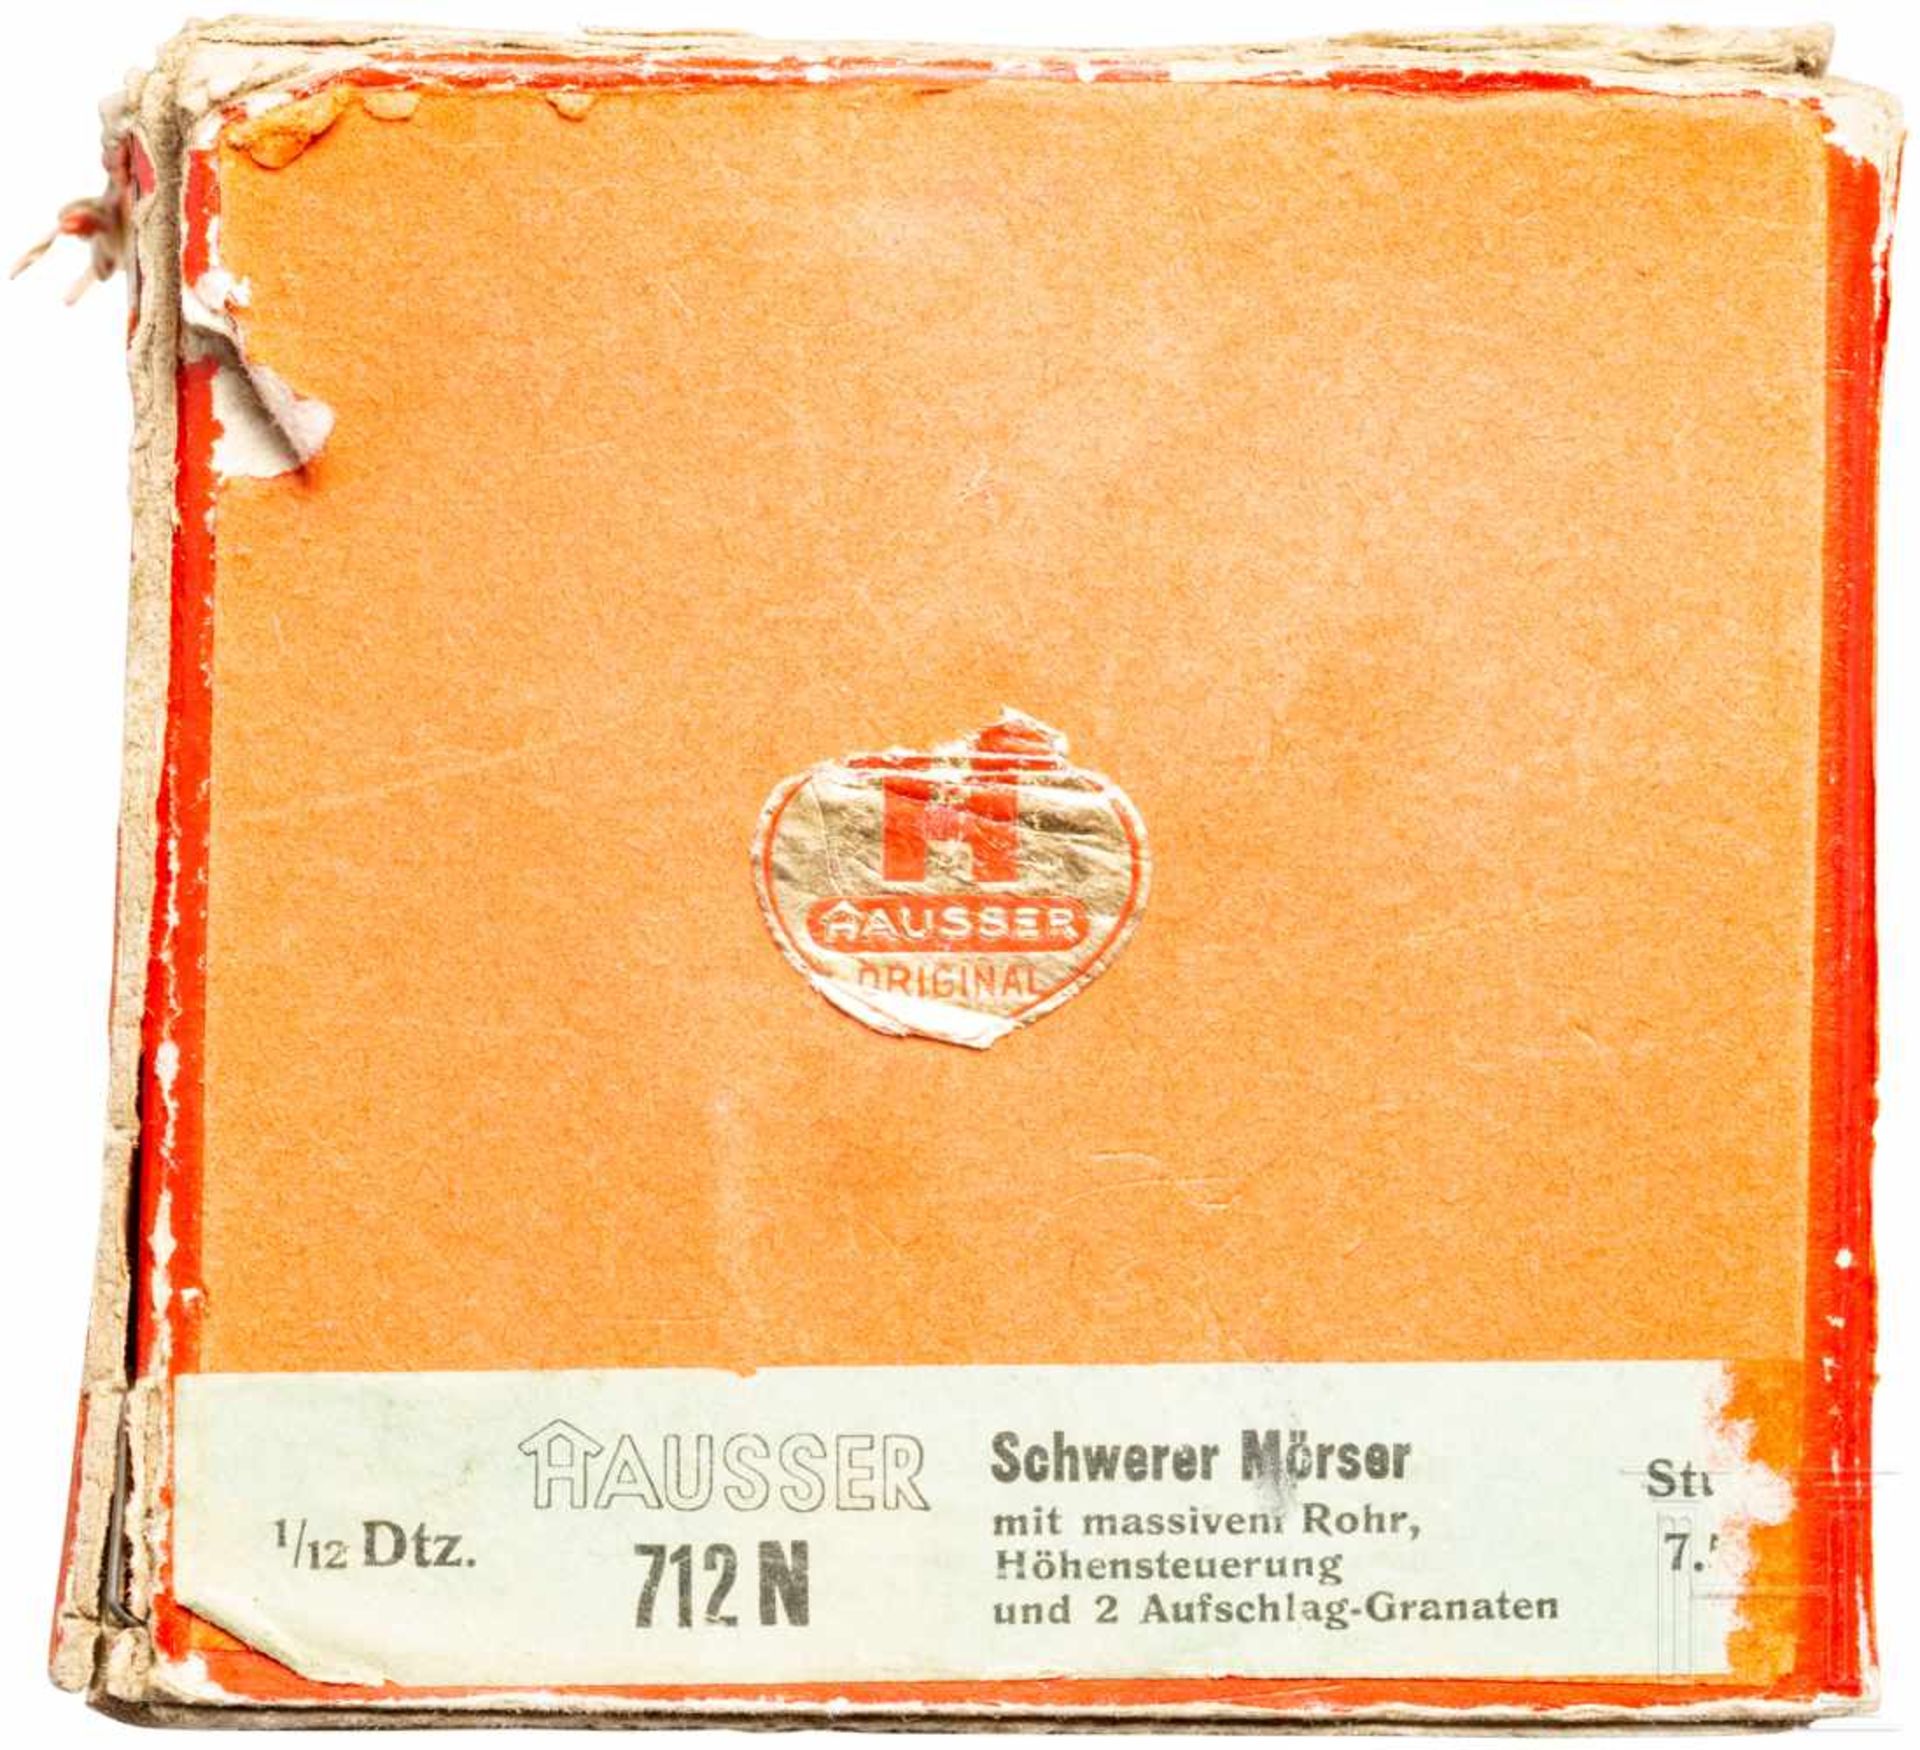 Hausser - schwerer Mörser 712 N im Originalkarton7 cm-Serie, Blechausführung, 30er Jahre. Ein - Bild 3 aus 4